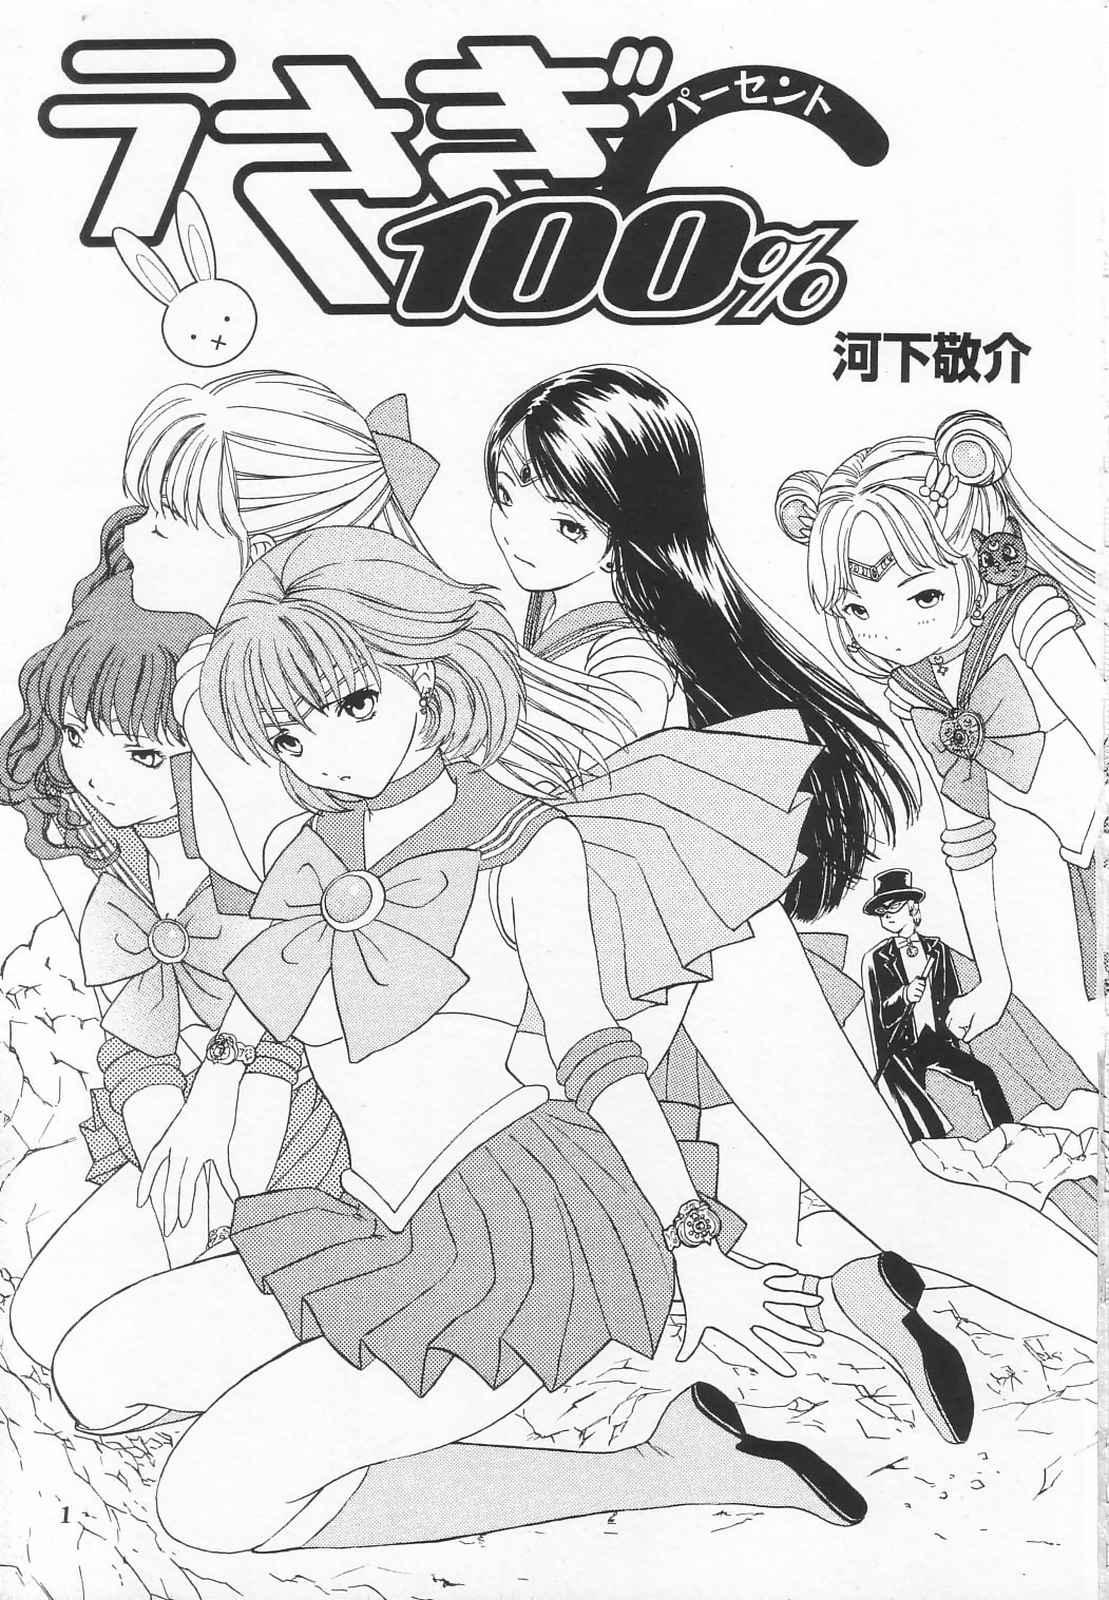 Amatures Gone Wild Tokusatsu Magazine x 2003 Fuyu Gou - Sailor moon Ichigo 100 Speculum - Page 3